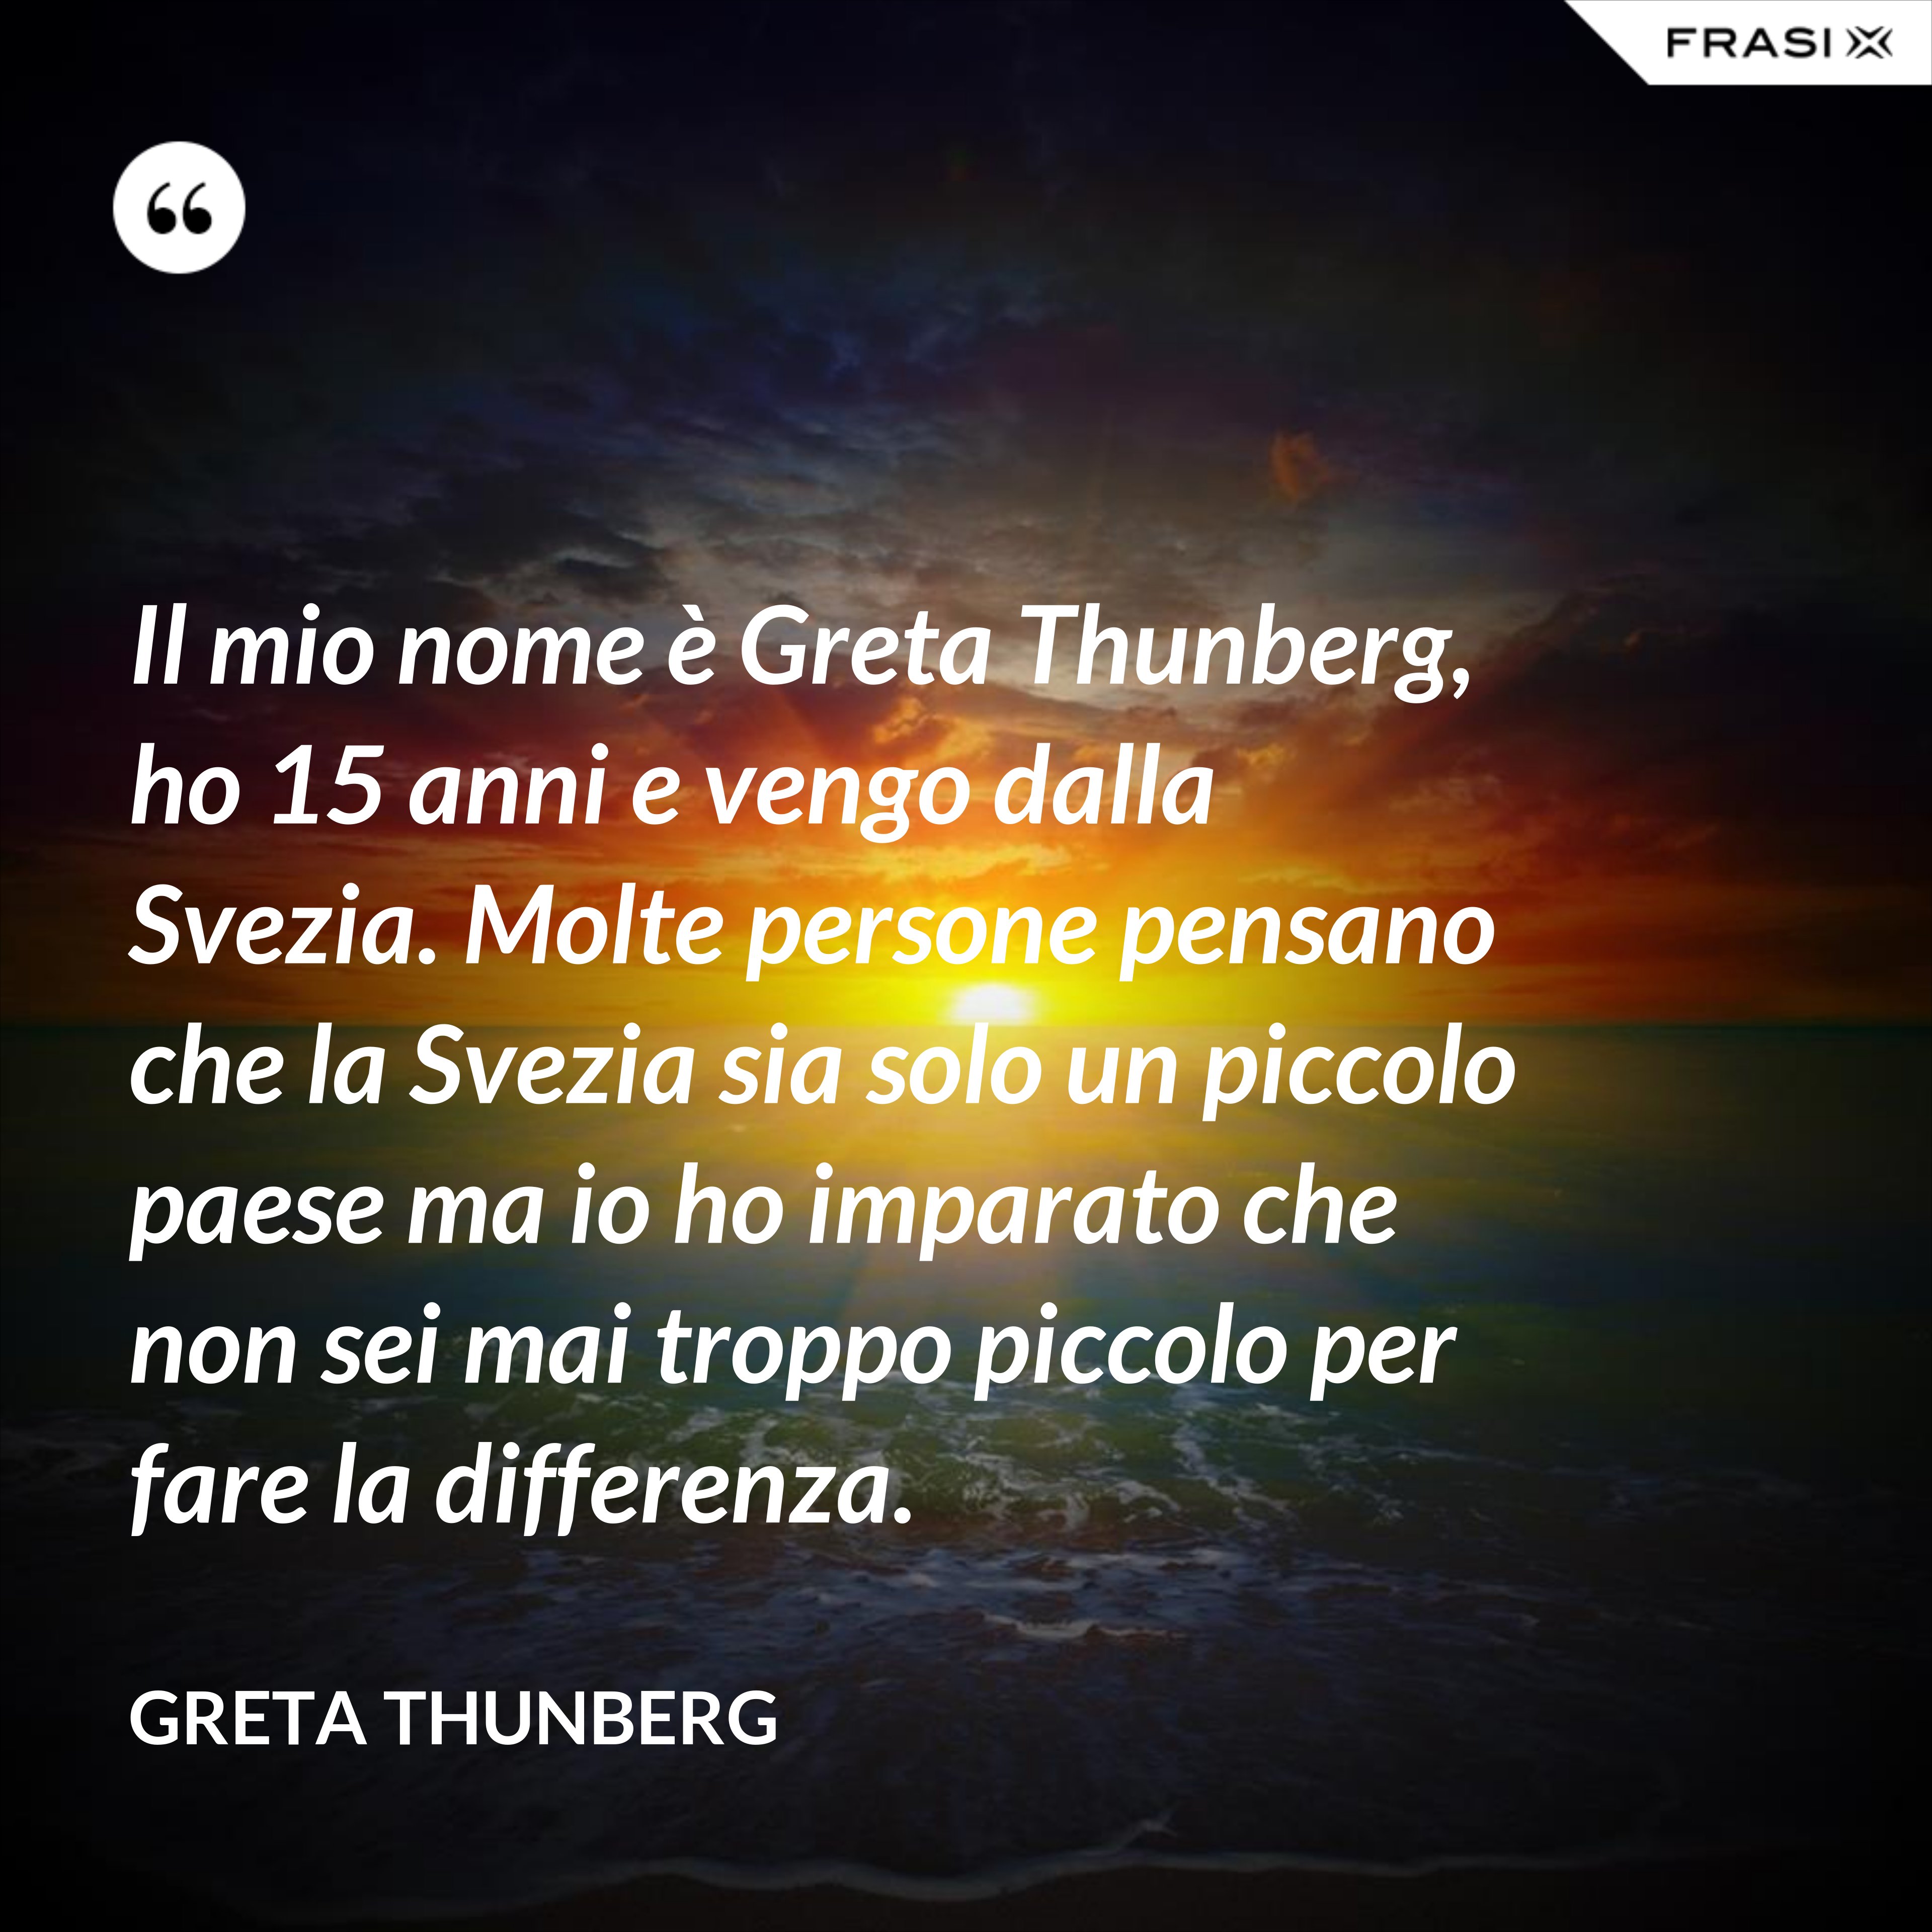 Il mio nome è Greta Thunberg, ho 15 anni e vengo dalla Svezia. Molte persone pensano che la Svezia sia solo un piccolo paese ma io ho imparato che non sei mai troppo piccolo per fare la differenza. - Greta Thunberg